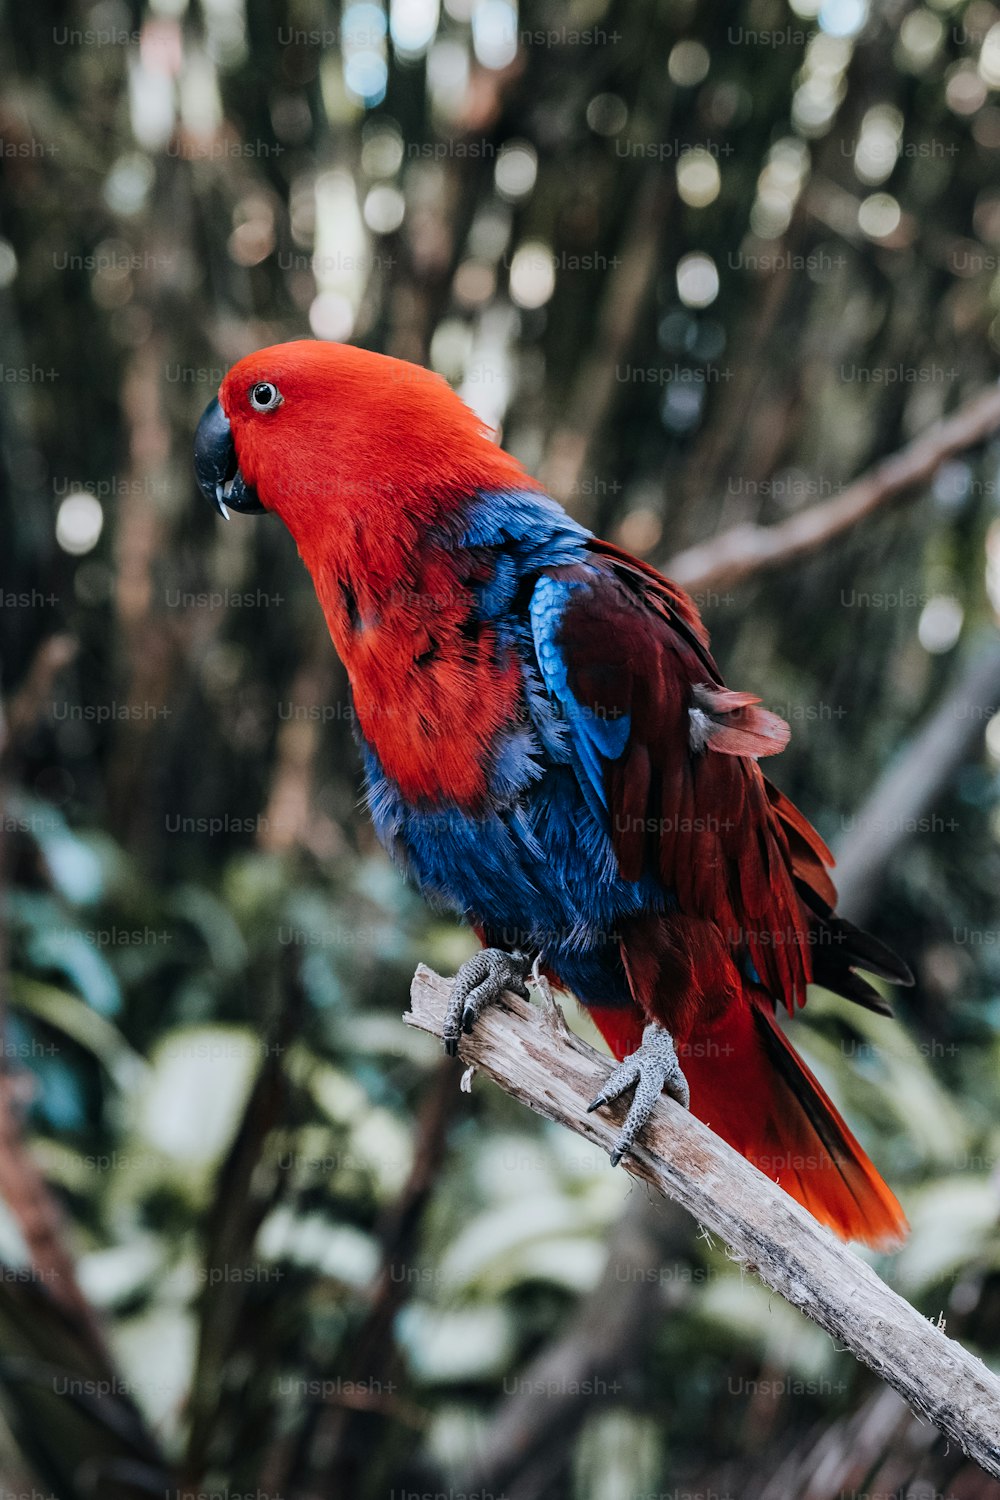 Un oiseau rouge et bleu perché sur une branche